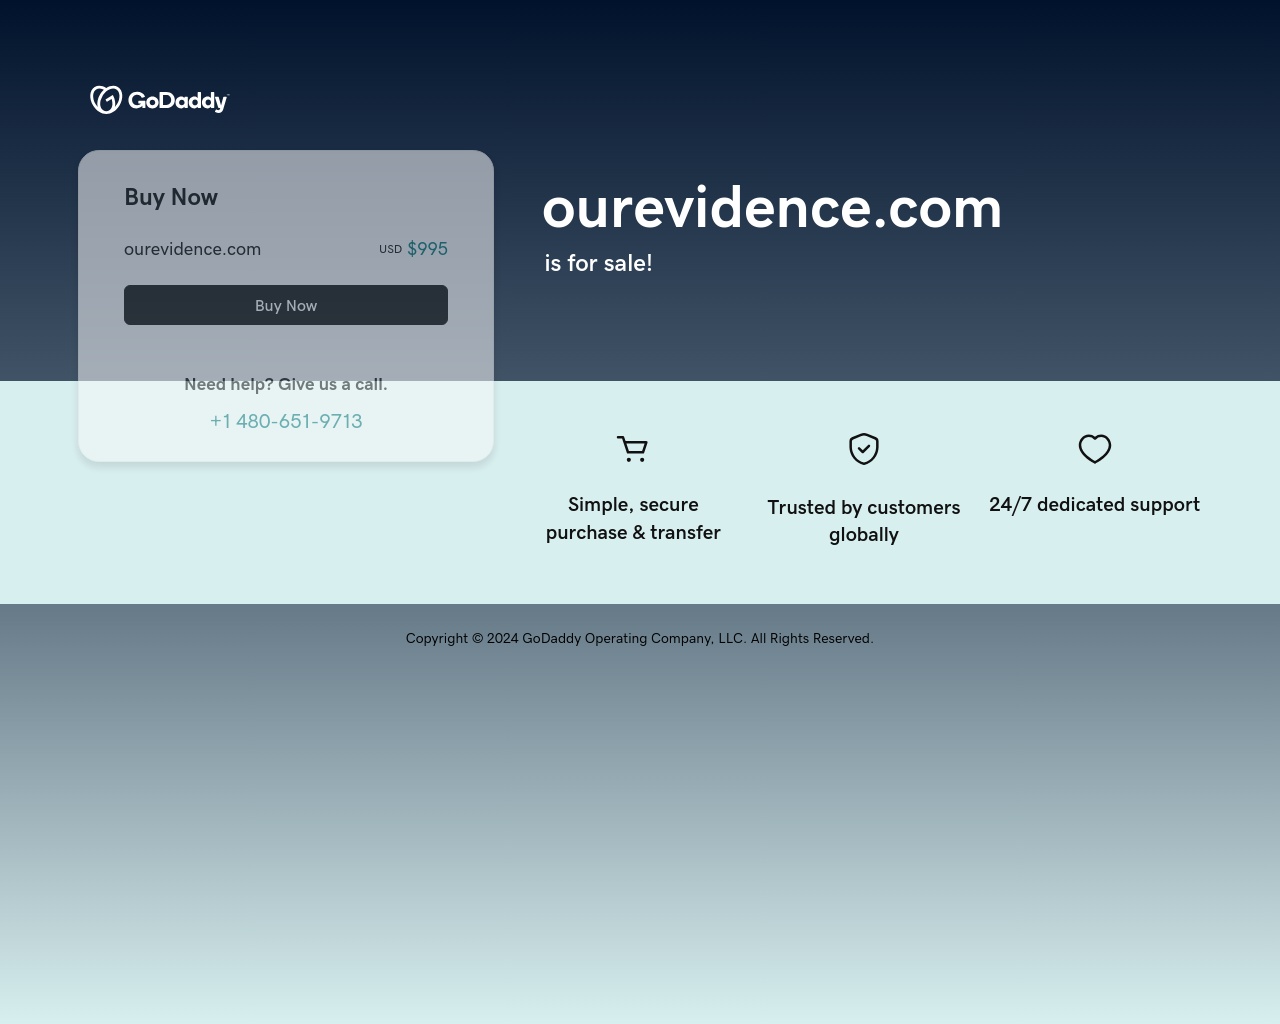 ourevidence.com